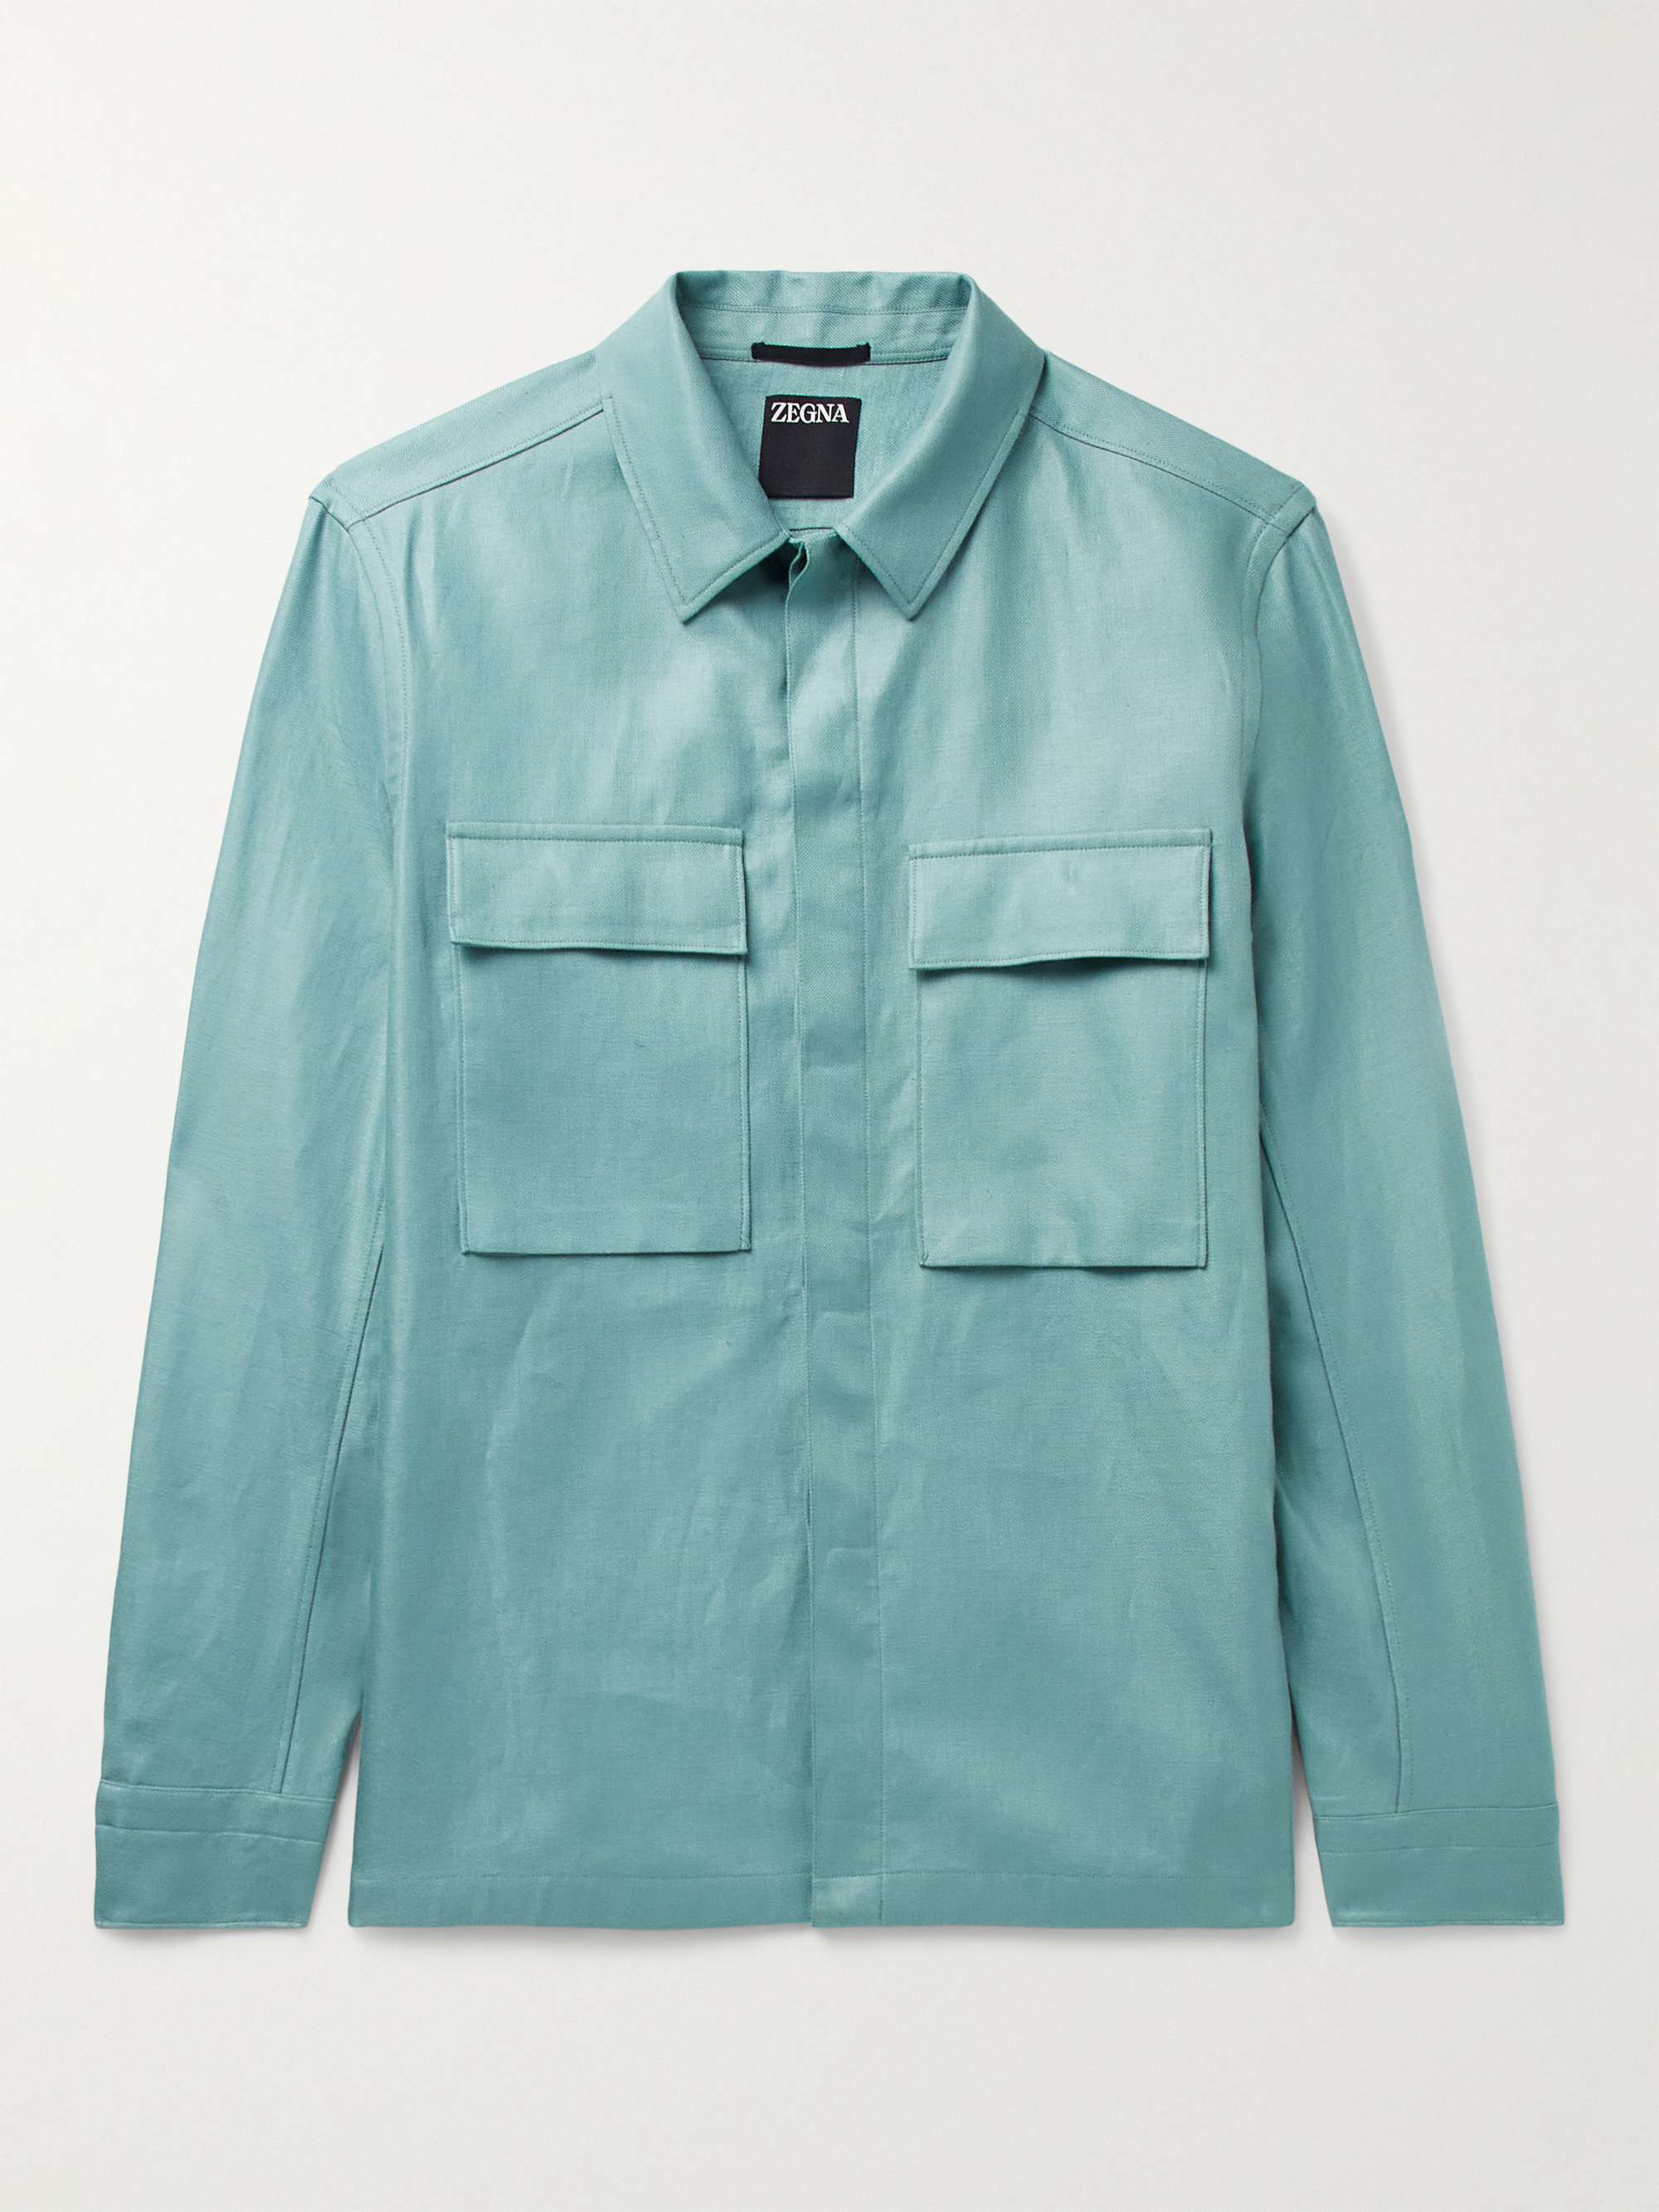 ZEGNA Linen-Twill Overshirt for Men | MR PORTER